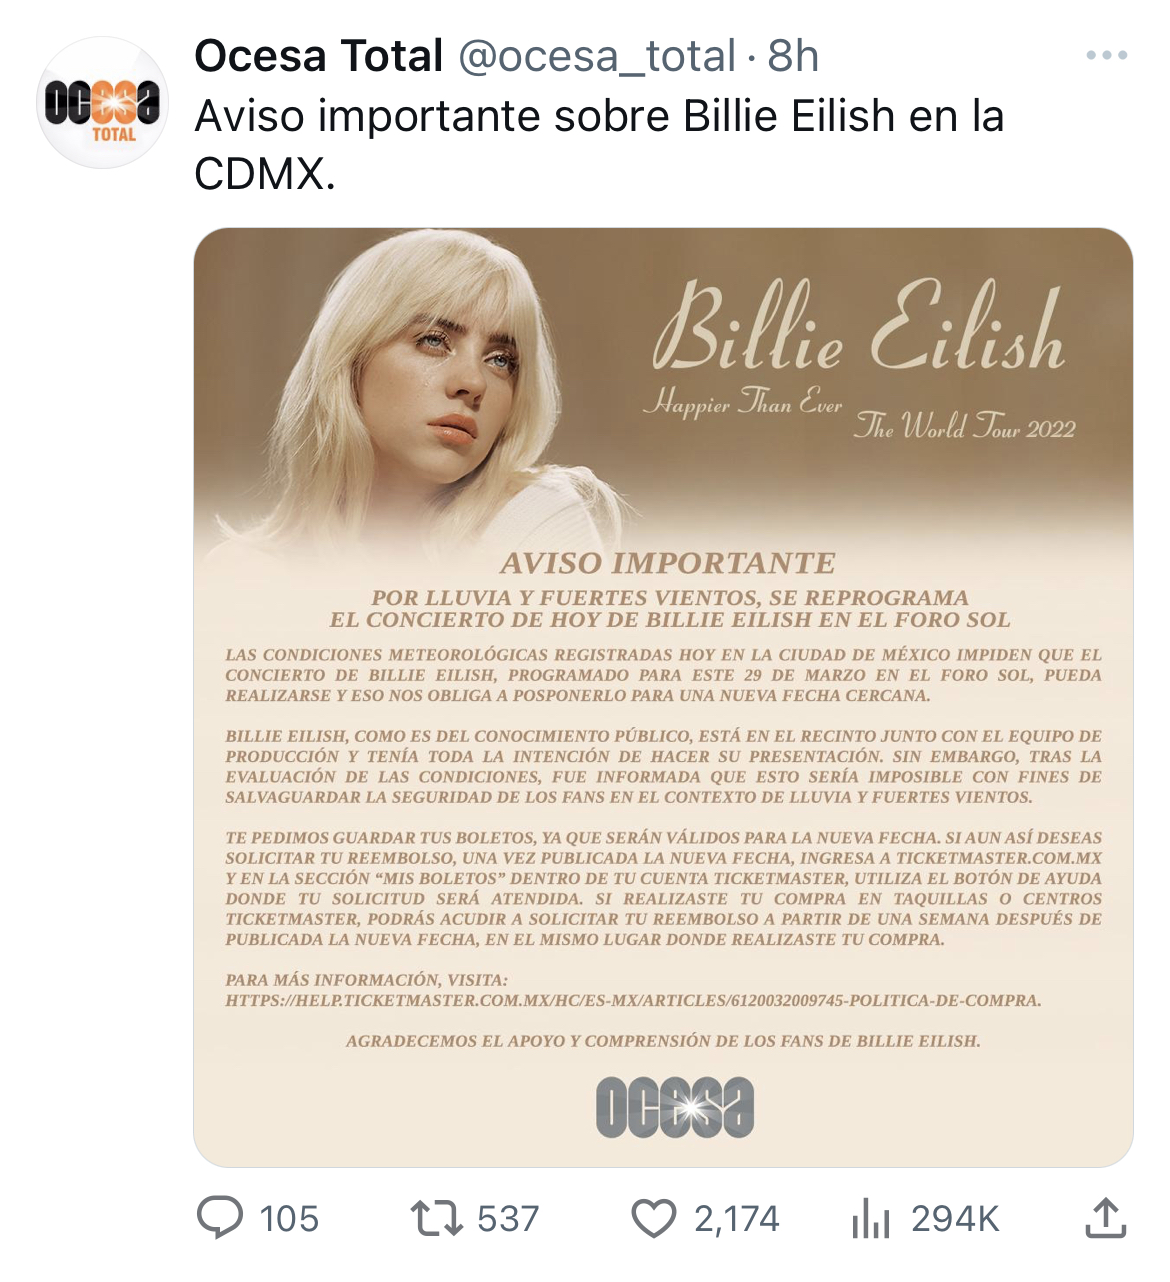 OCESA, organizadora del concierto de Billie Eilish en CDMX, afirmó que los boletos de su concierto del 29 de marzo serán válidos para nueva fecha (Twitter @ocesa_total)